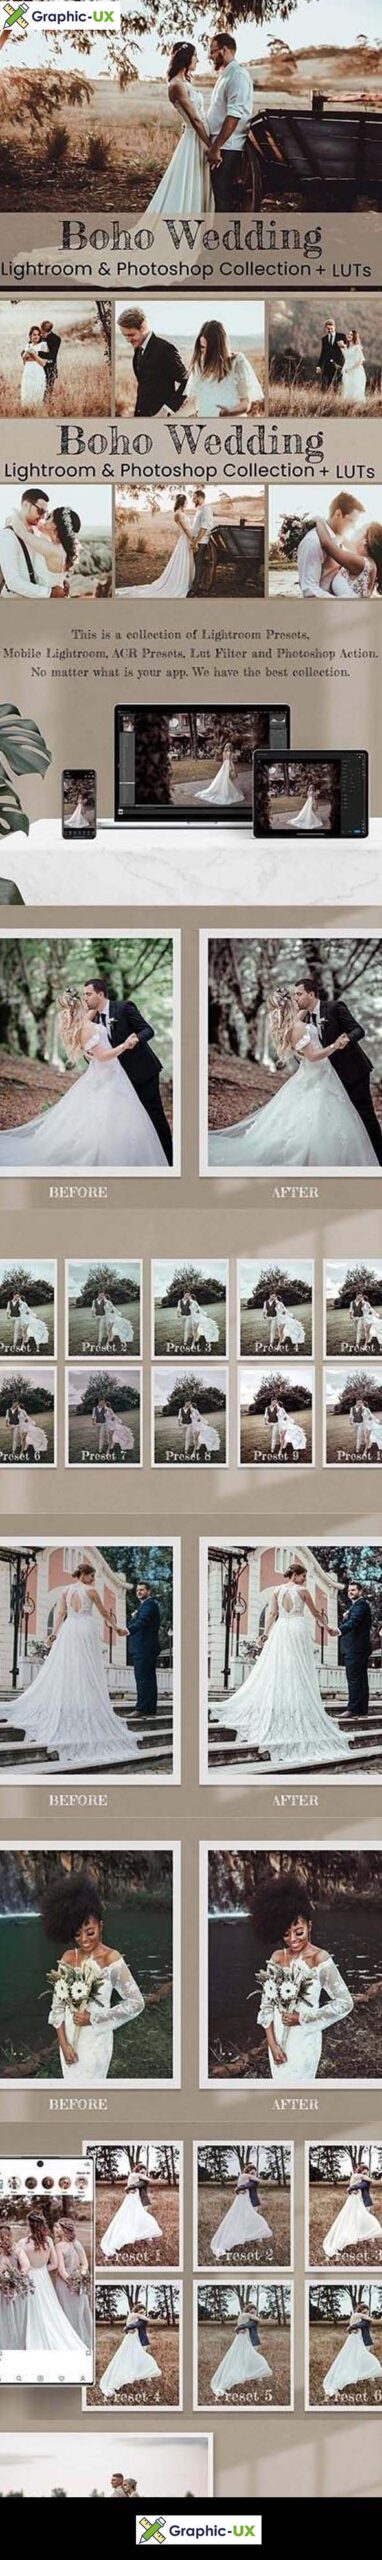 Boho Wedding Photoshop Actions